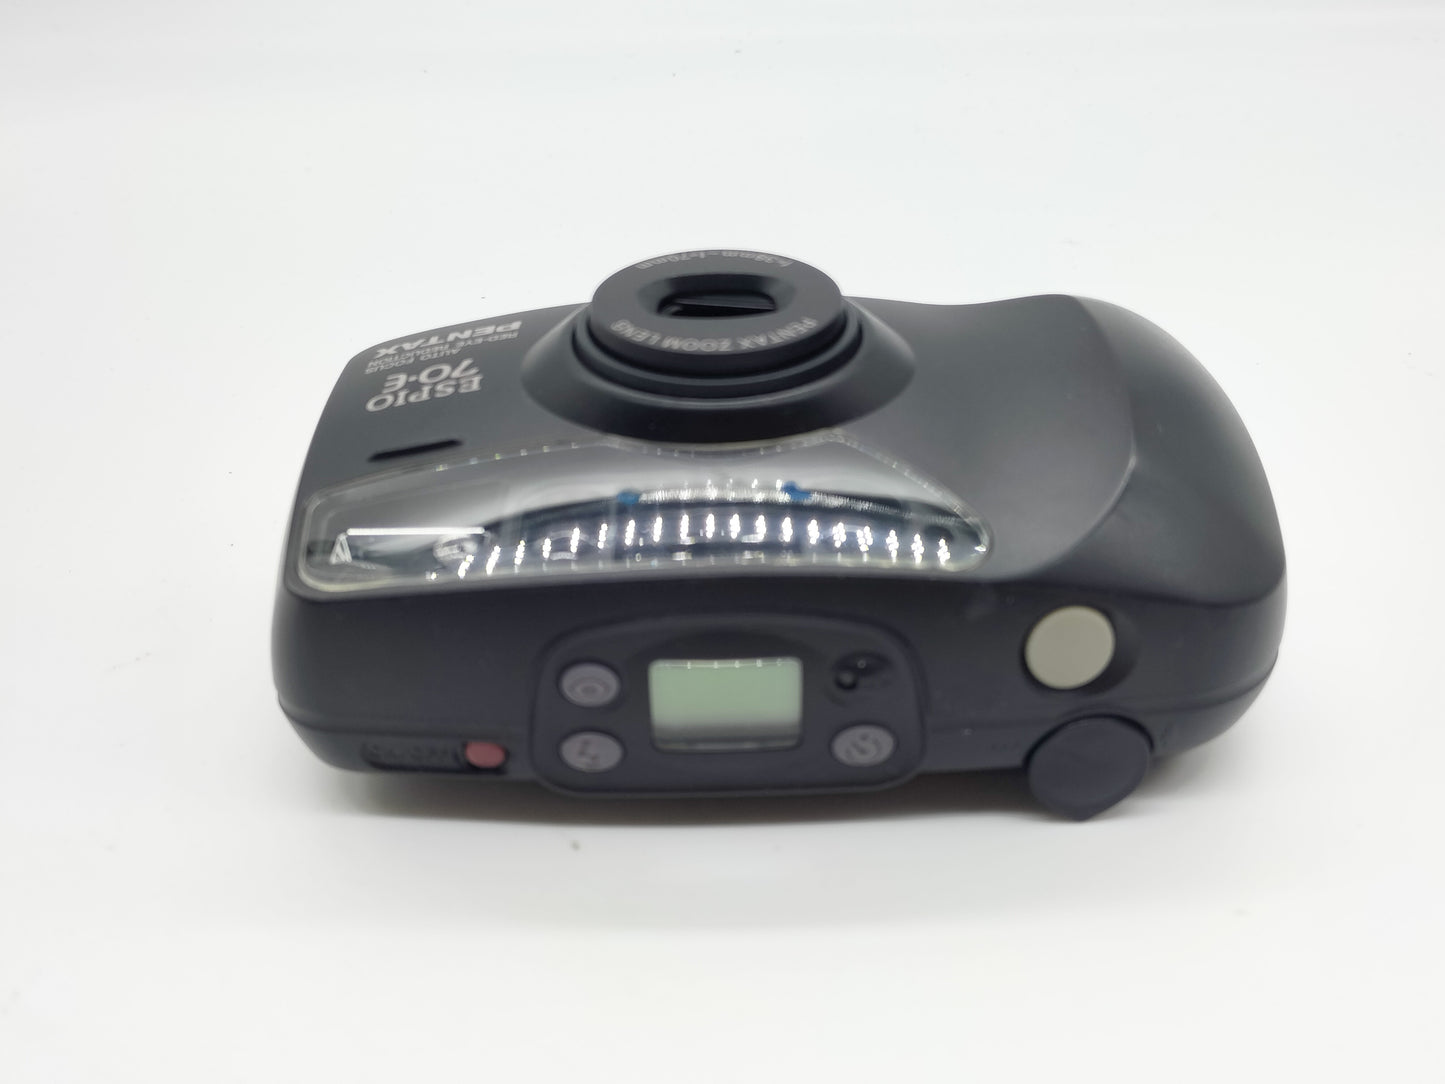 Pentax Espio 70-E point-and-shoot film camera